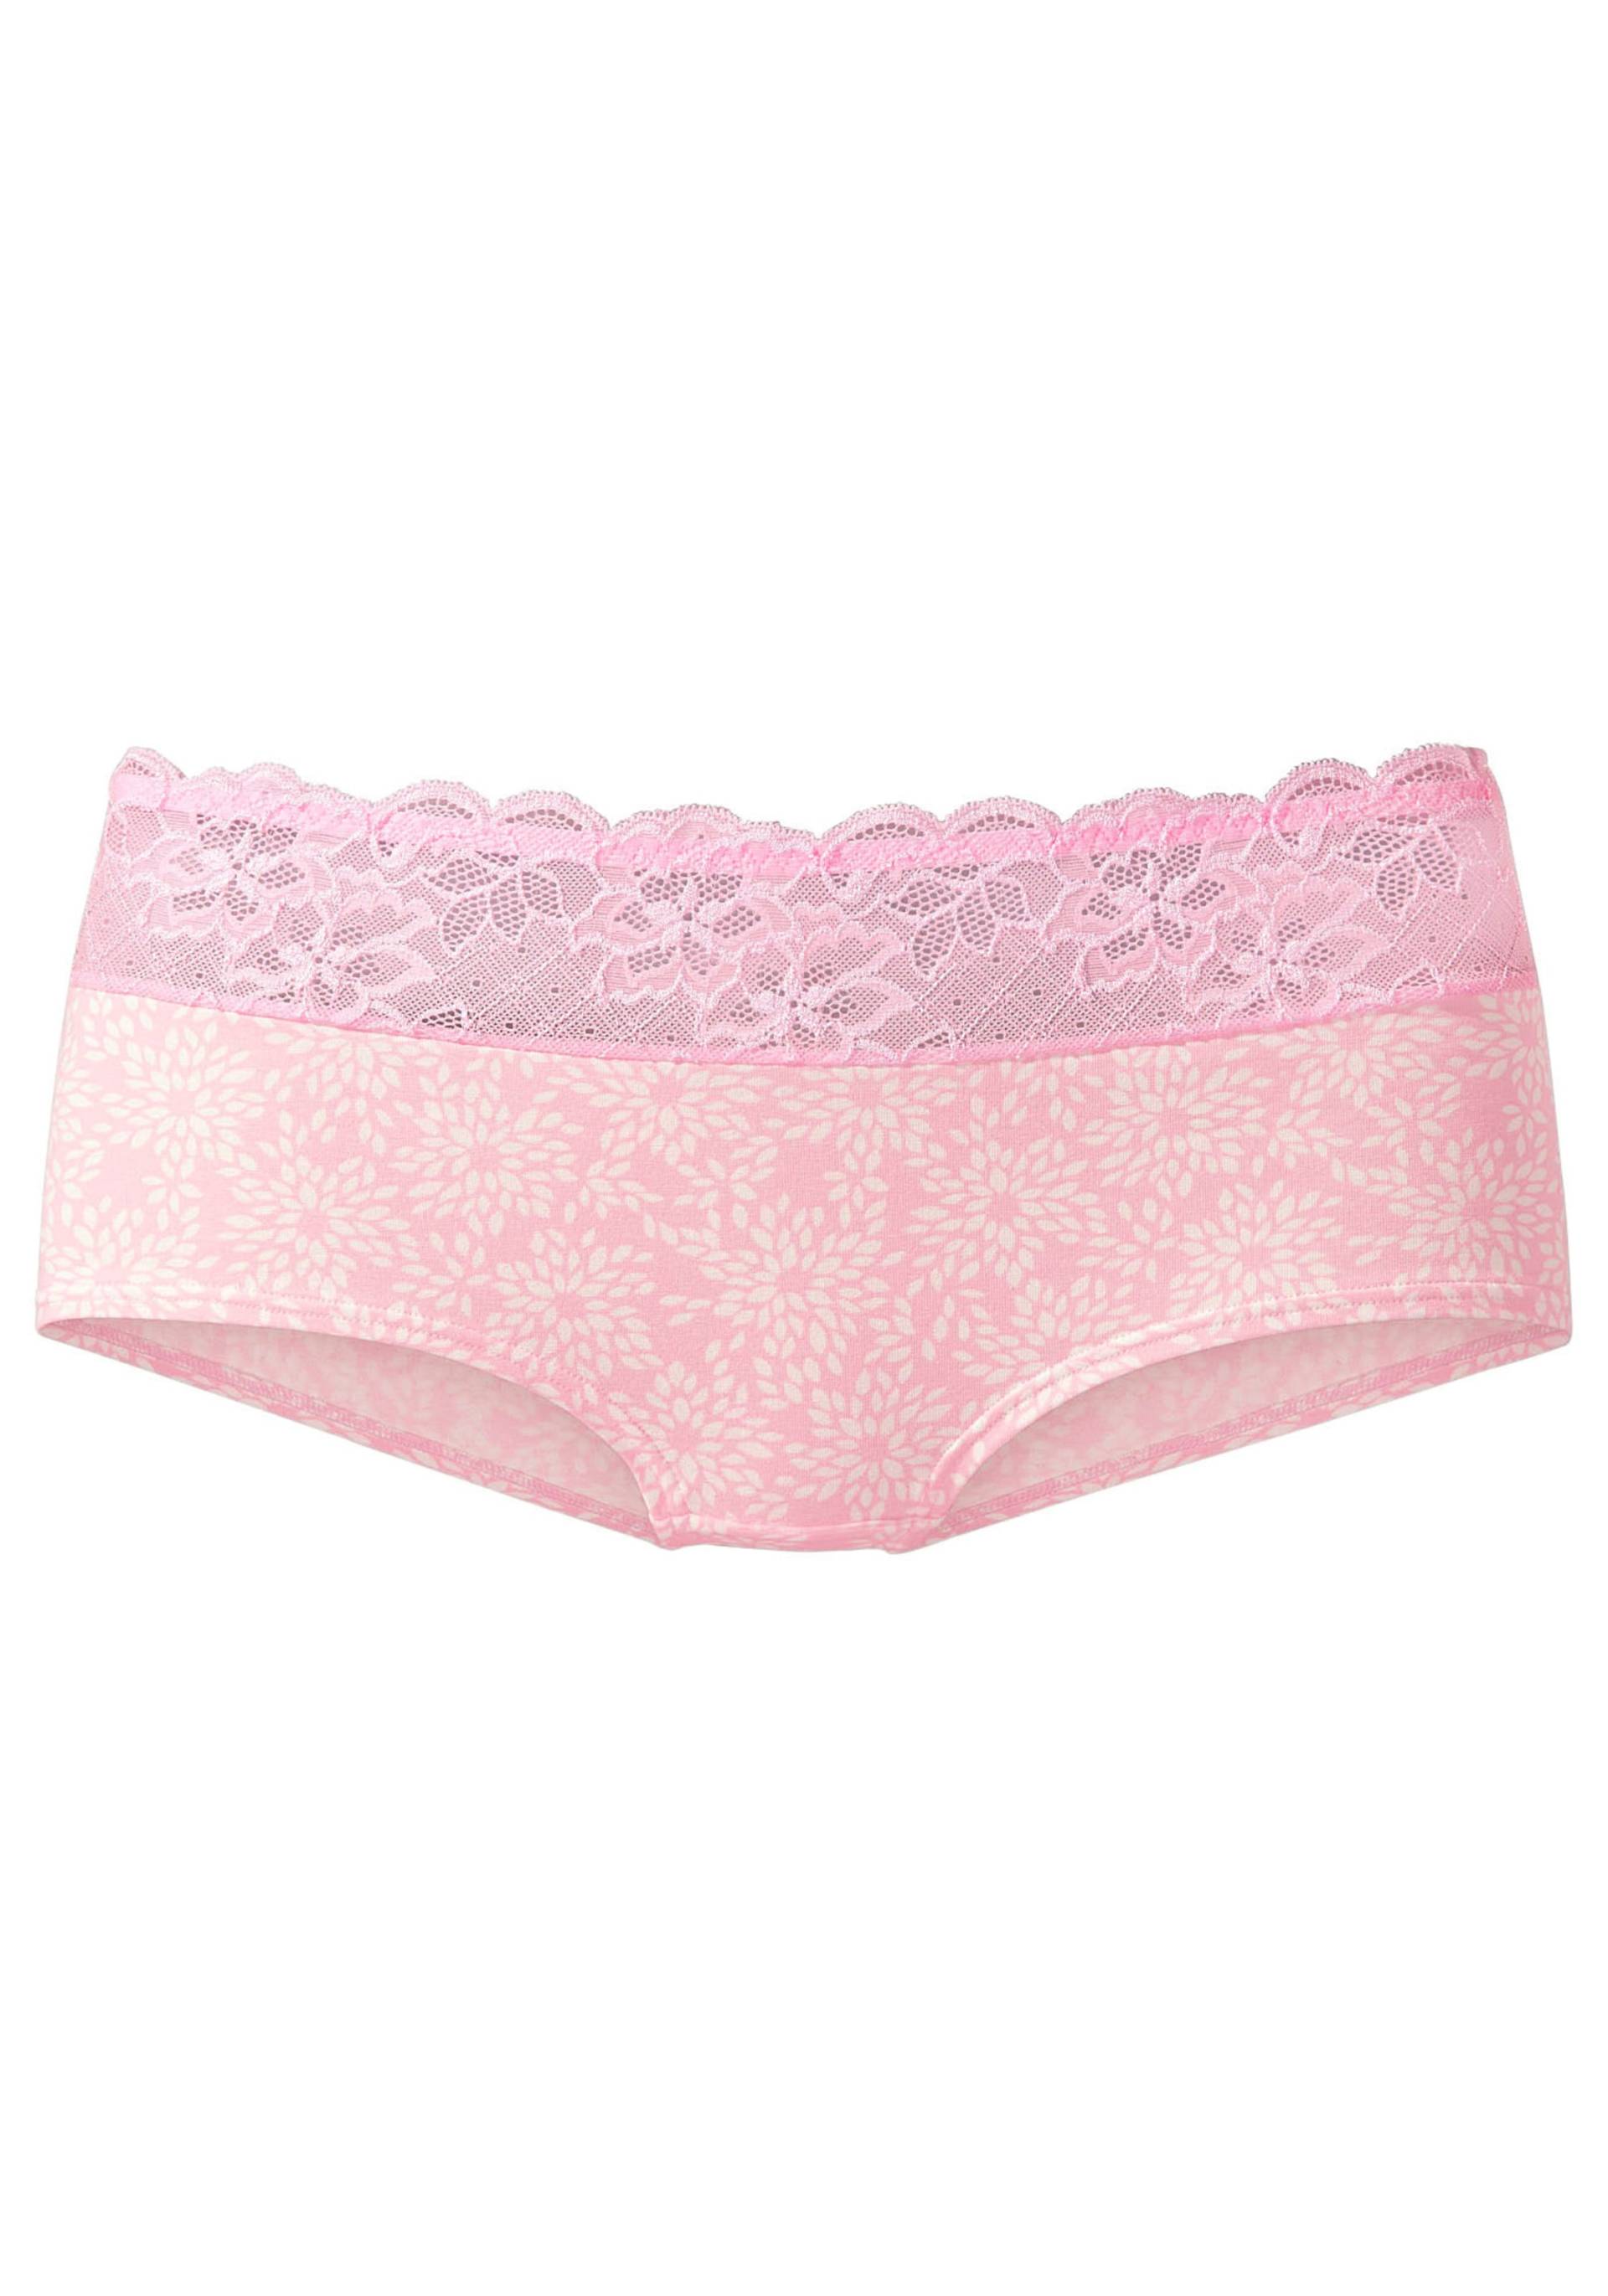 Panty in rosa-puder von Nuance von Nuance